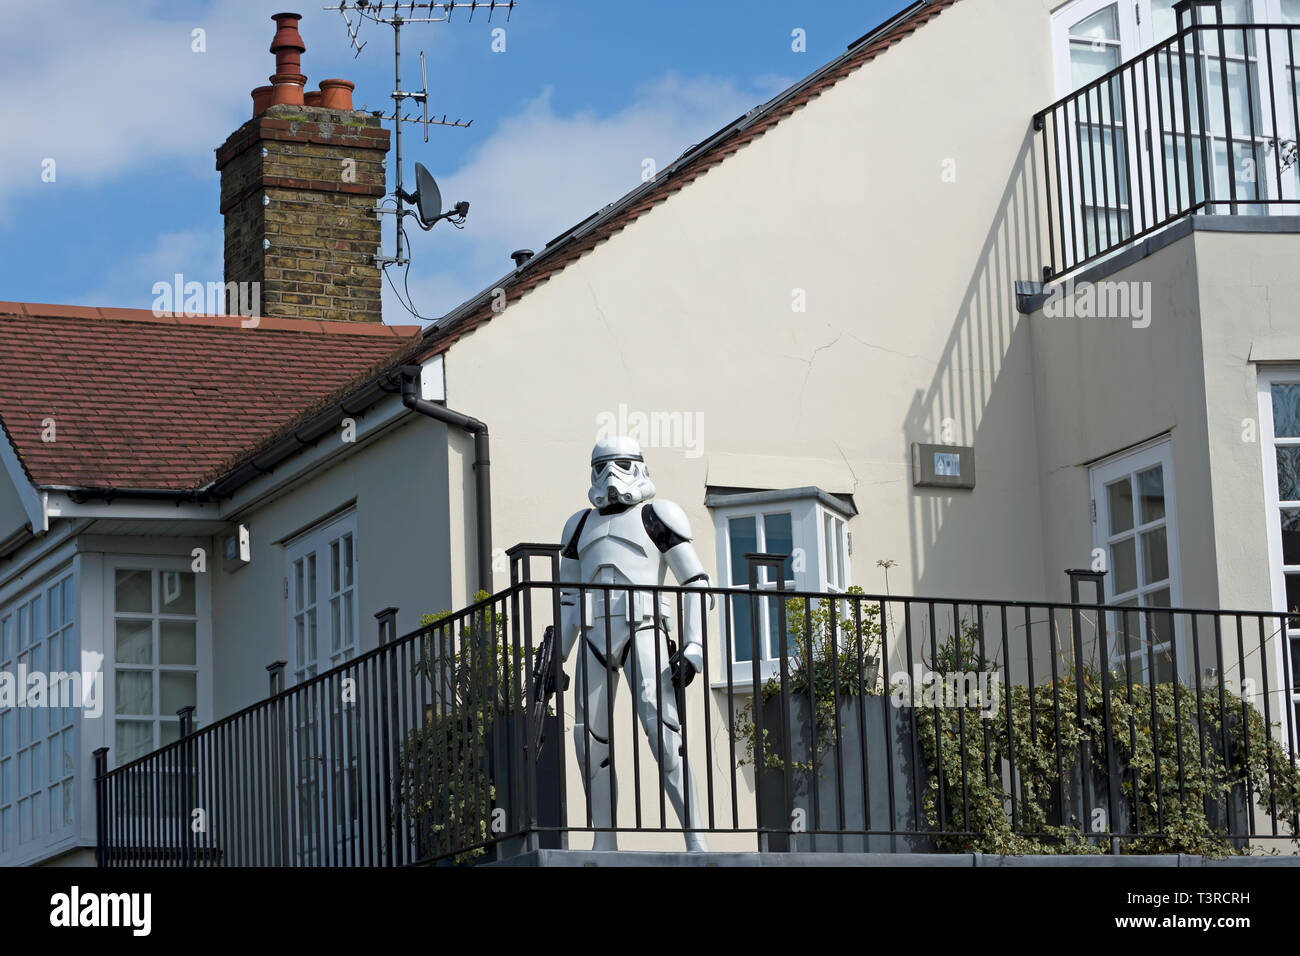 Un star wars stormtrooper figure décore une maison à Barnes, au sud-ouest de Londres, Angleterre Banque D'Images